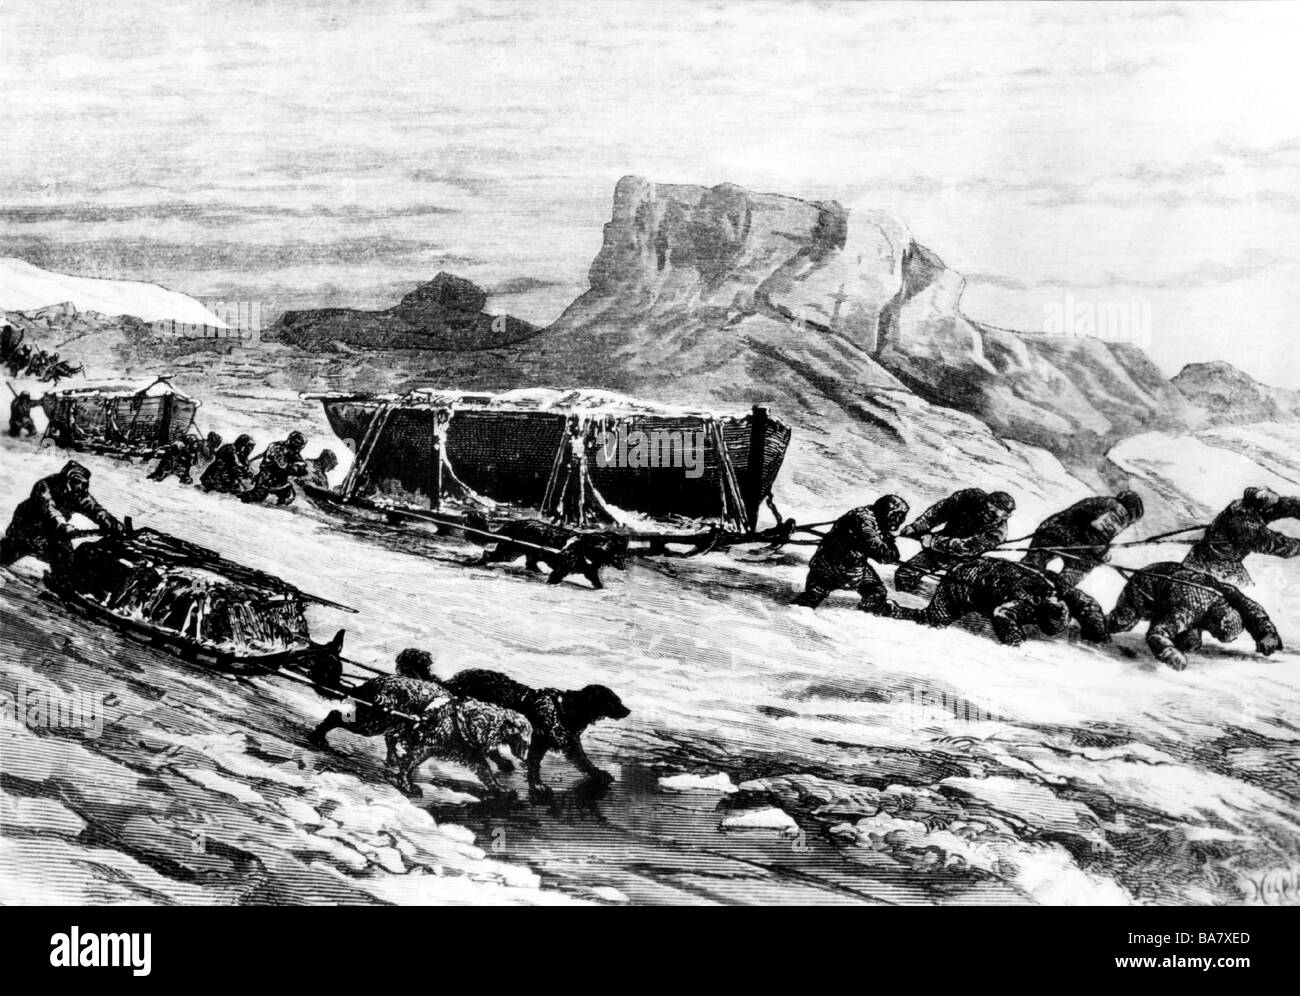 Borchgrevink, Carsten, 1.12.1864 - 23.4.1934, explorateur polaire norvégien, bateaux à chenilles sur glace polaire, boisés de Riou, XIXe siècle, Banque D'Images